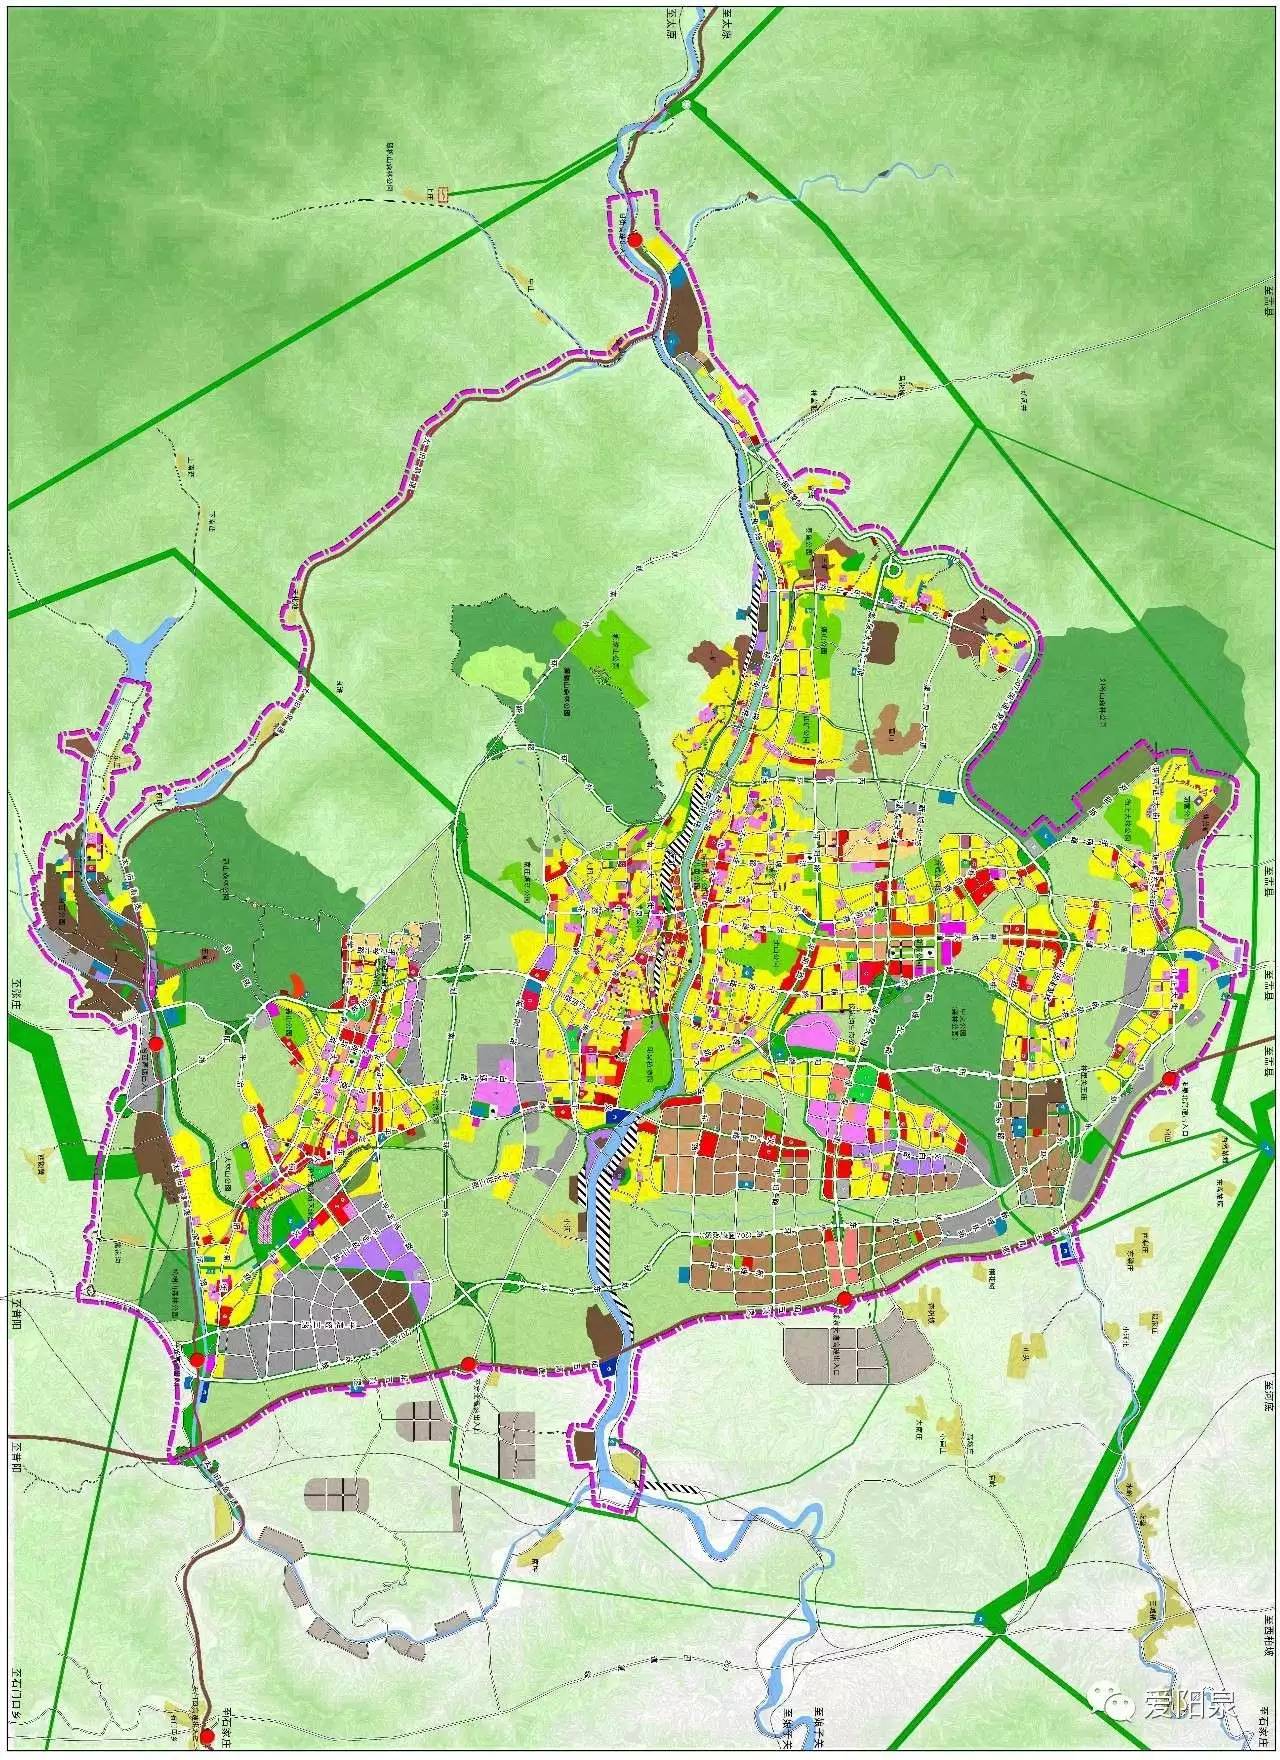 将如何规划中心城区用地规划图发布阳泉市城市总体规划(2011